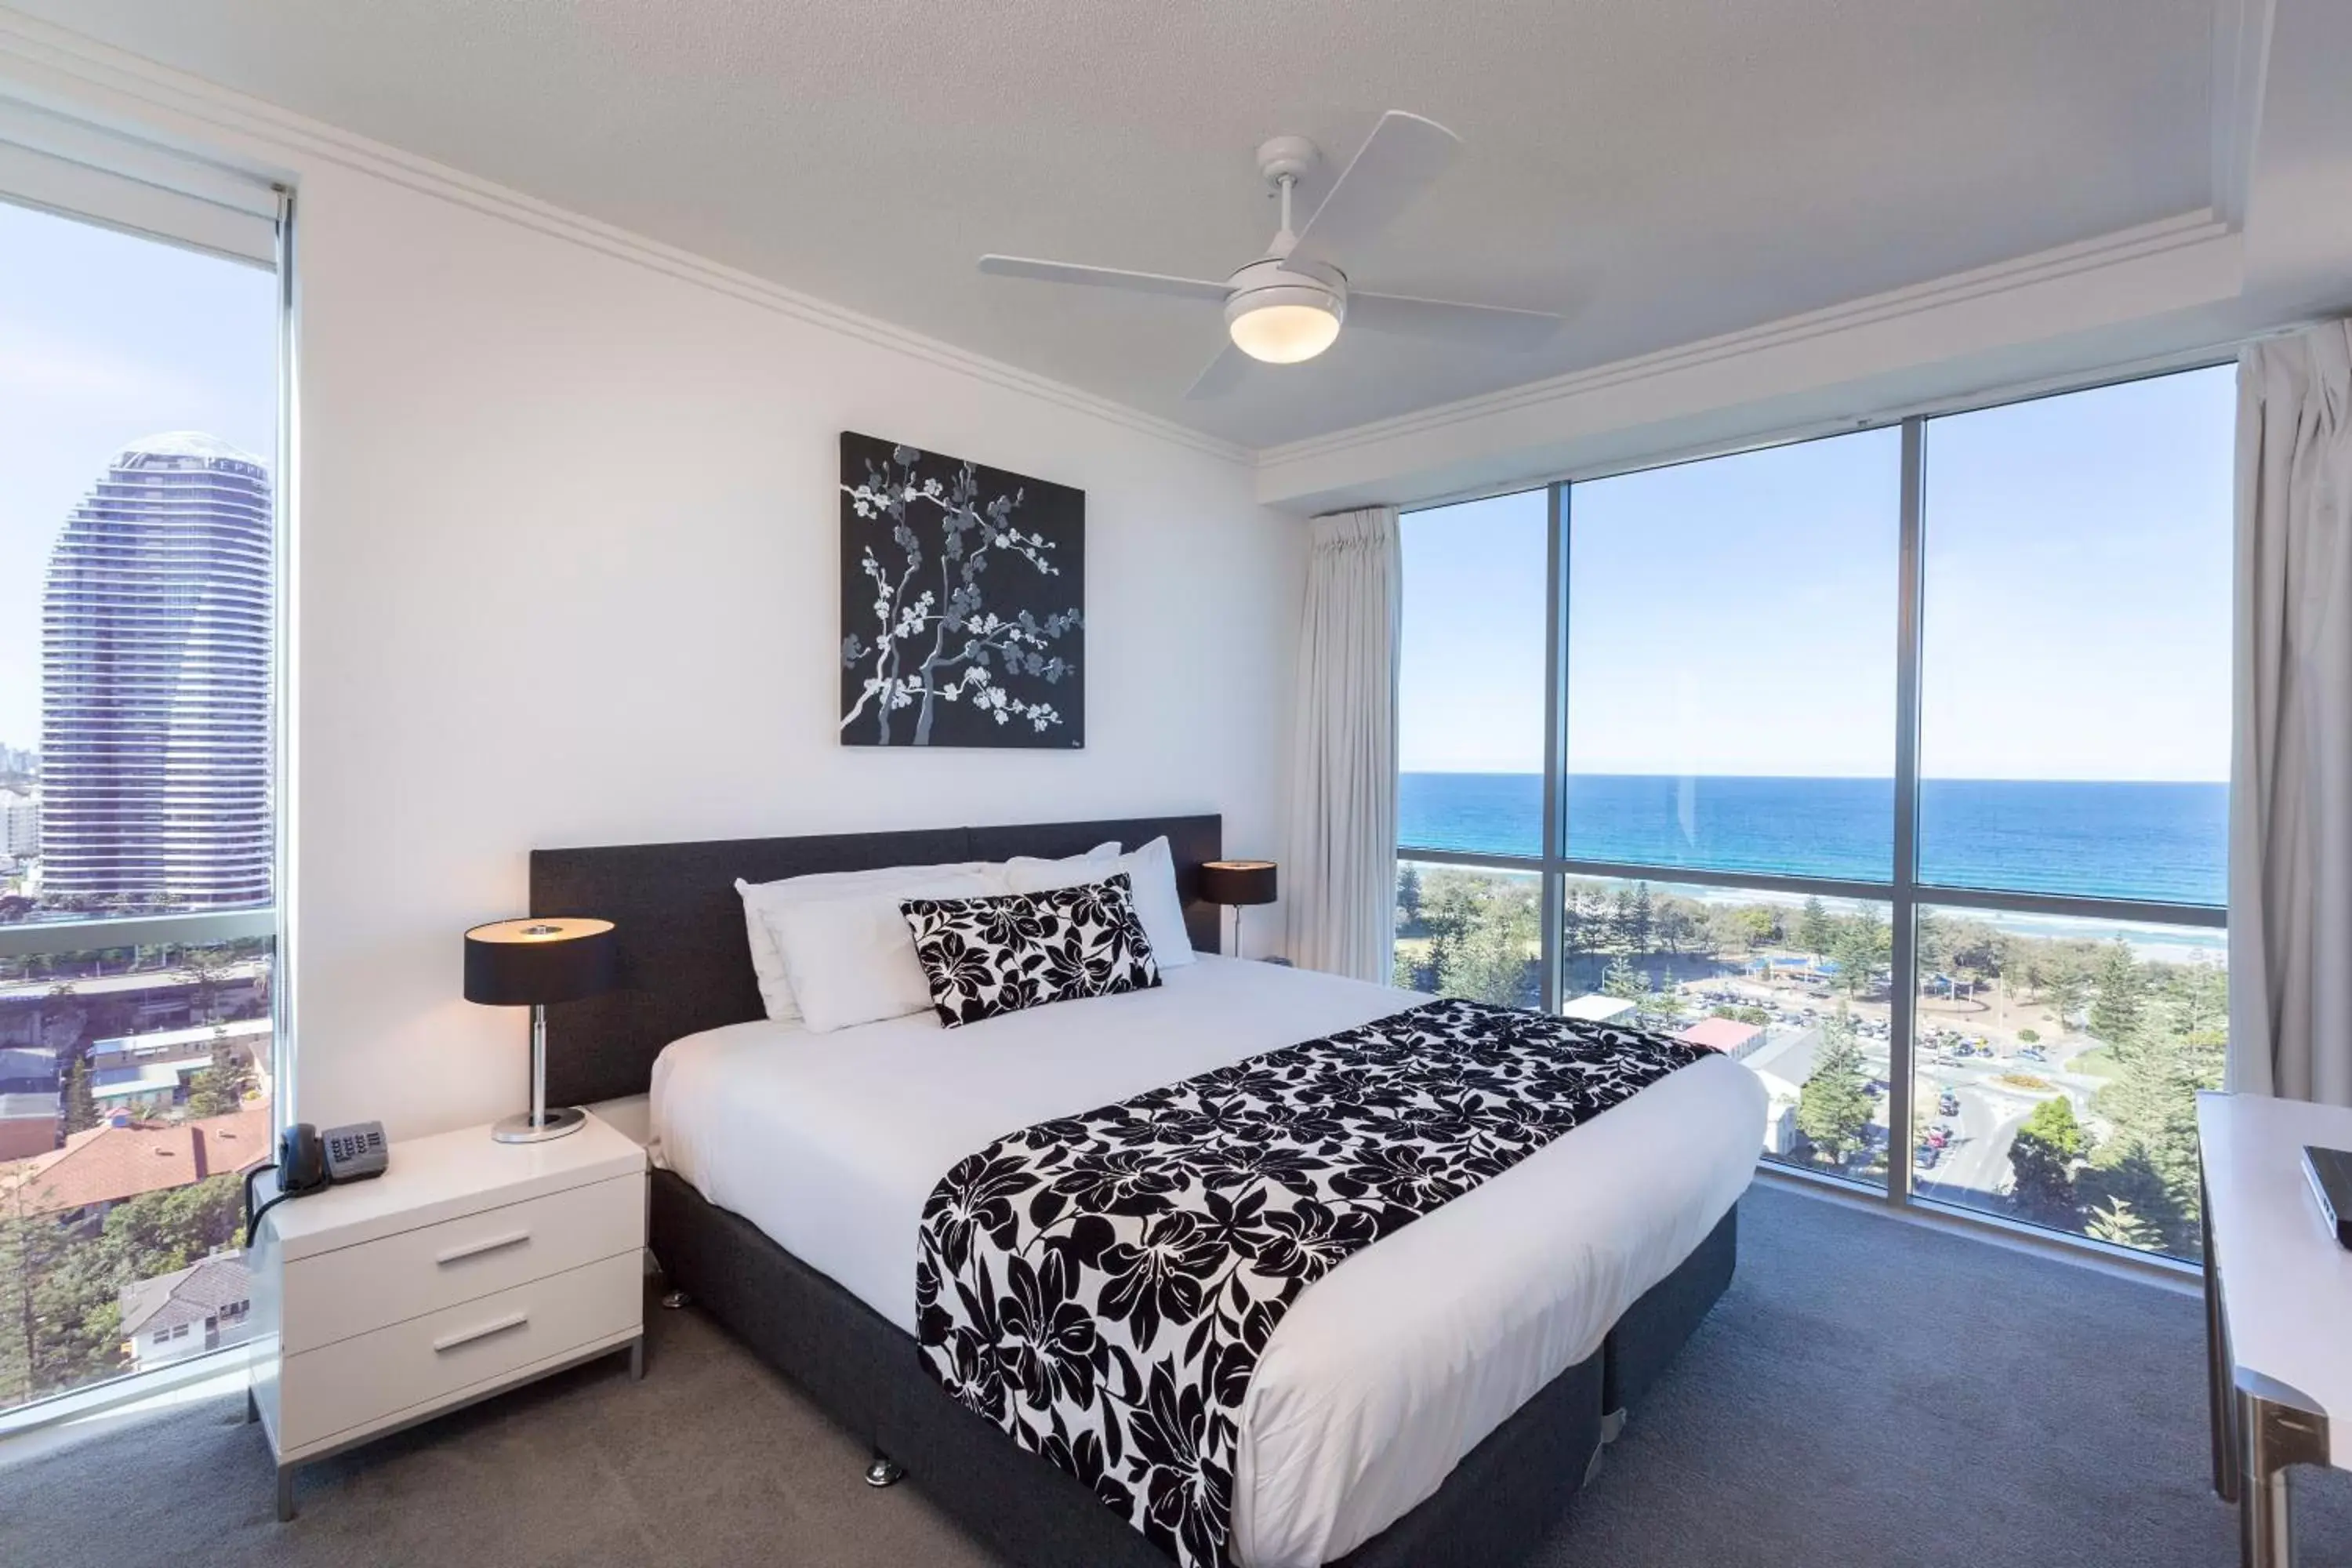 Bedroom, Room Photo in Ocean Pacific Resort - Official